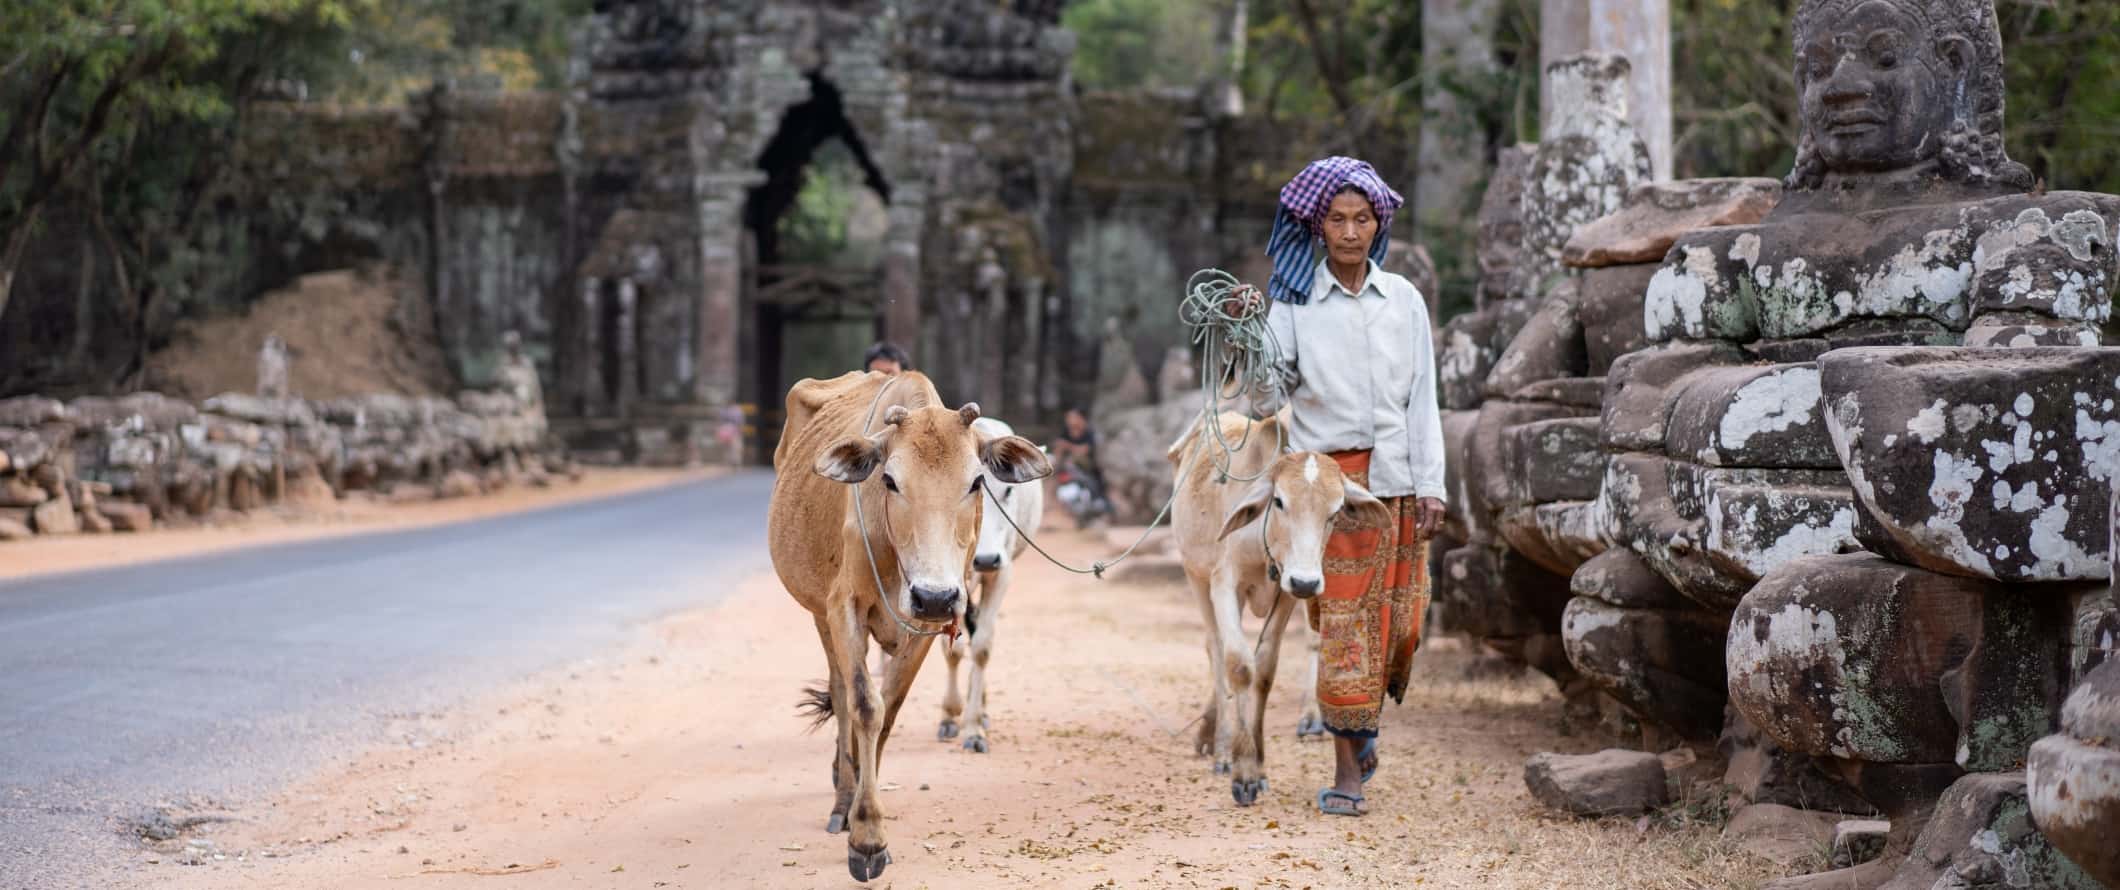 Uma mulher caminha por um caminho com vacas nas proximidades do antigo complexo de templos de Angkor Wat, Camboja